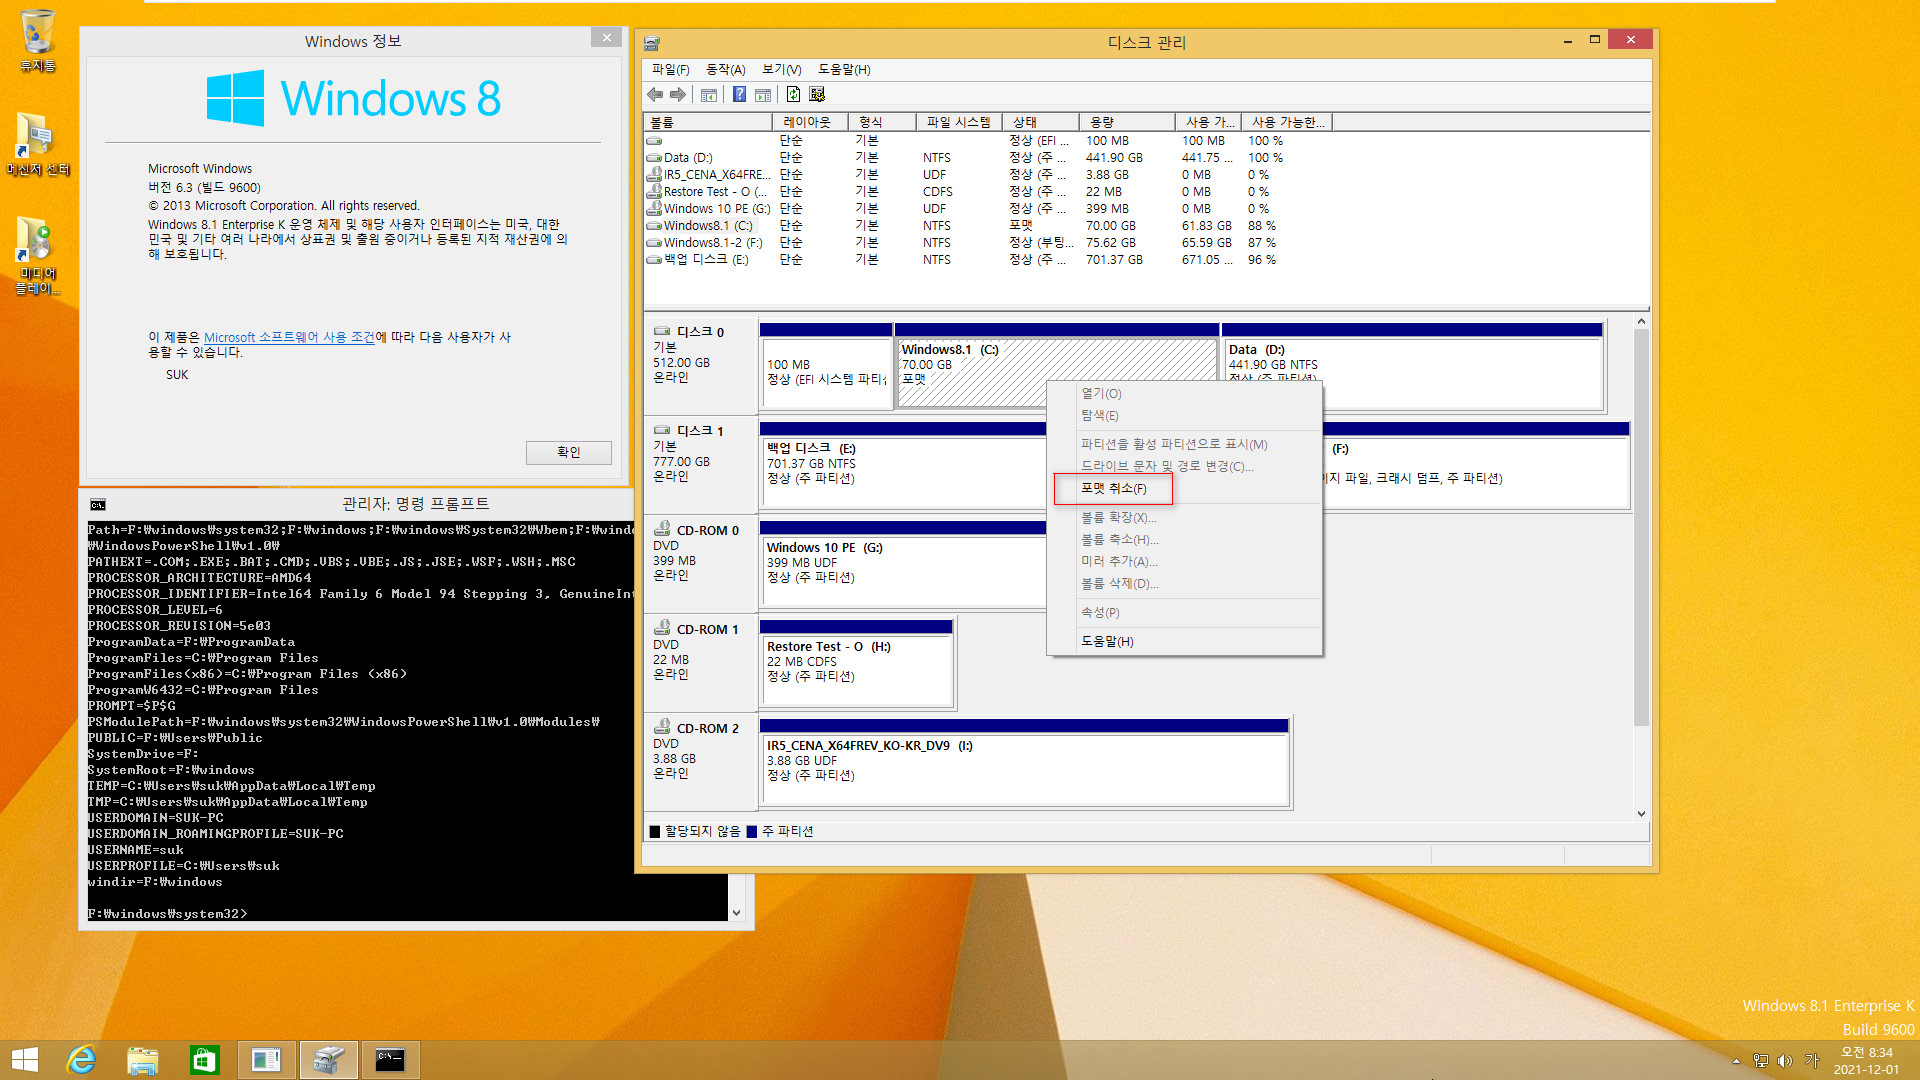 Windows 8.1은 여전히 같은 컴퓨터에서 다른 파티션에 복원하면 기존 윈도우와 복원한 윈도우 2개를 동시에 사용하는군요. 기존 C드라이브 문자만 삭제하면 정상 부팅됩니다 2021-12-01_083445.jpg